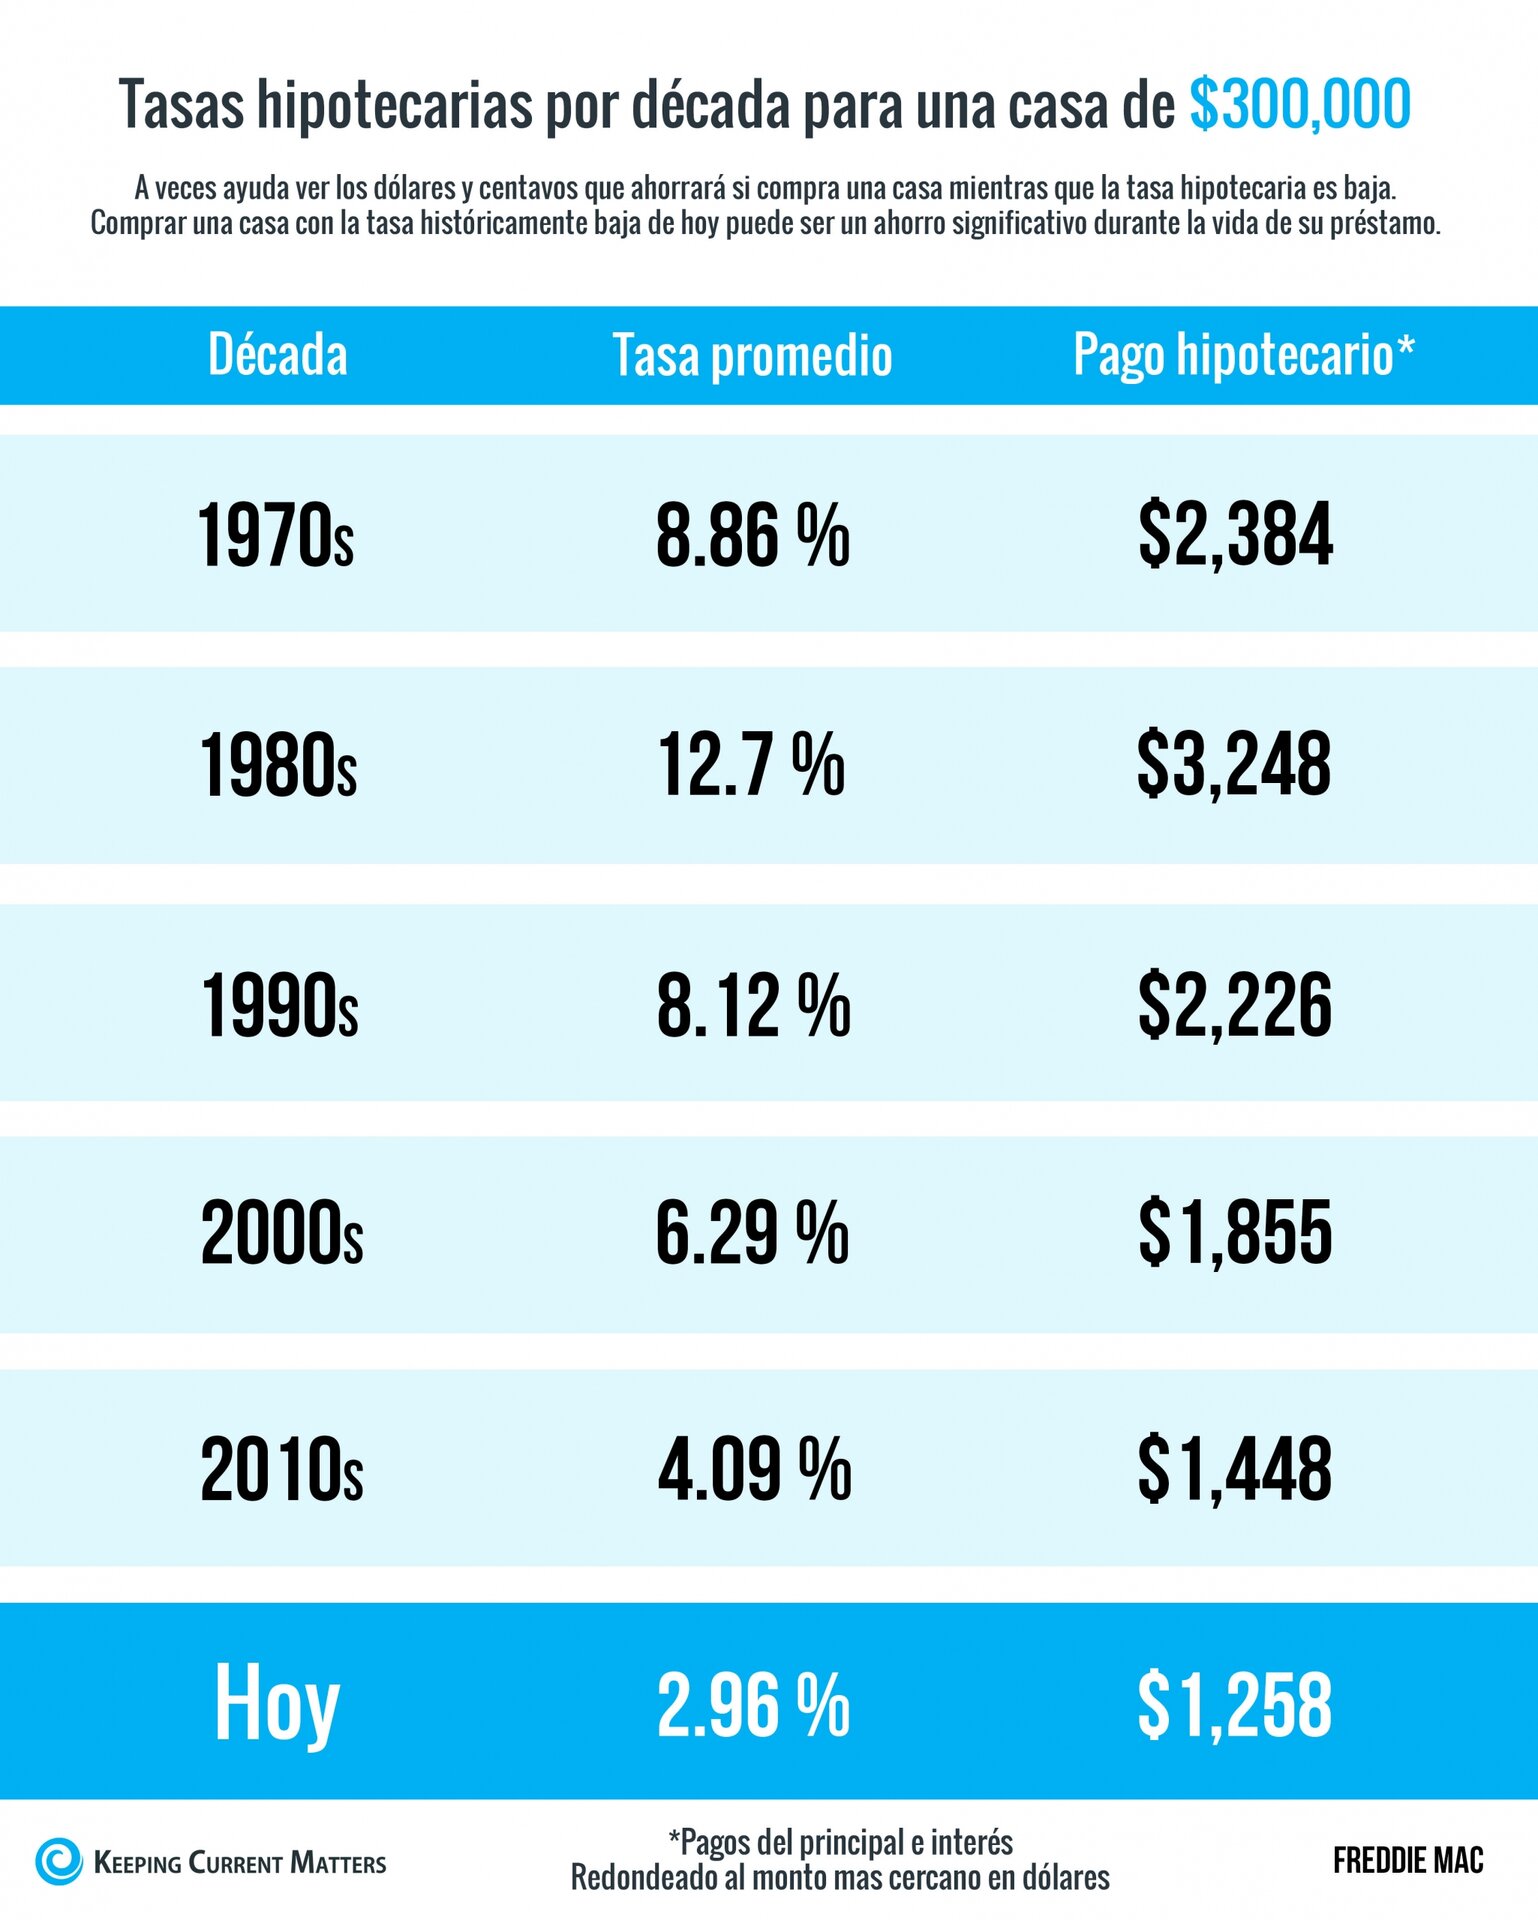 Tasas y pagos hipotecarios por década [Infografía] | Keeping Current Matters